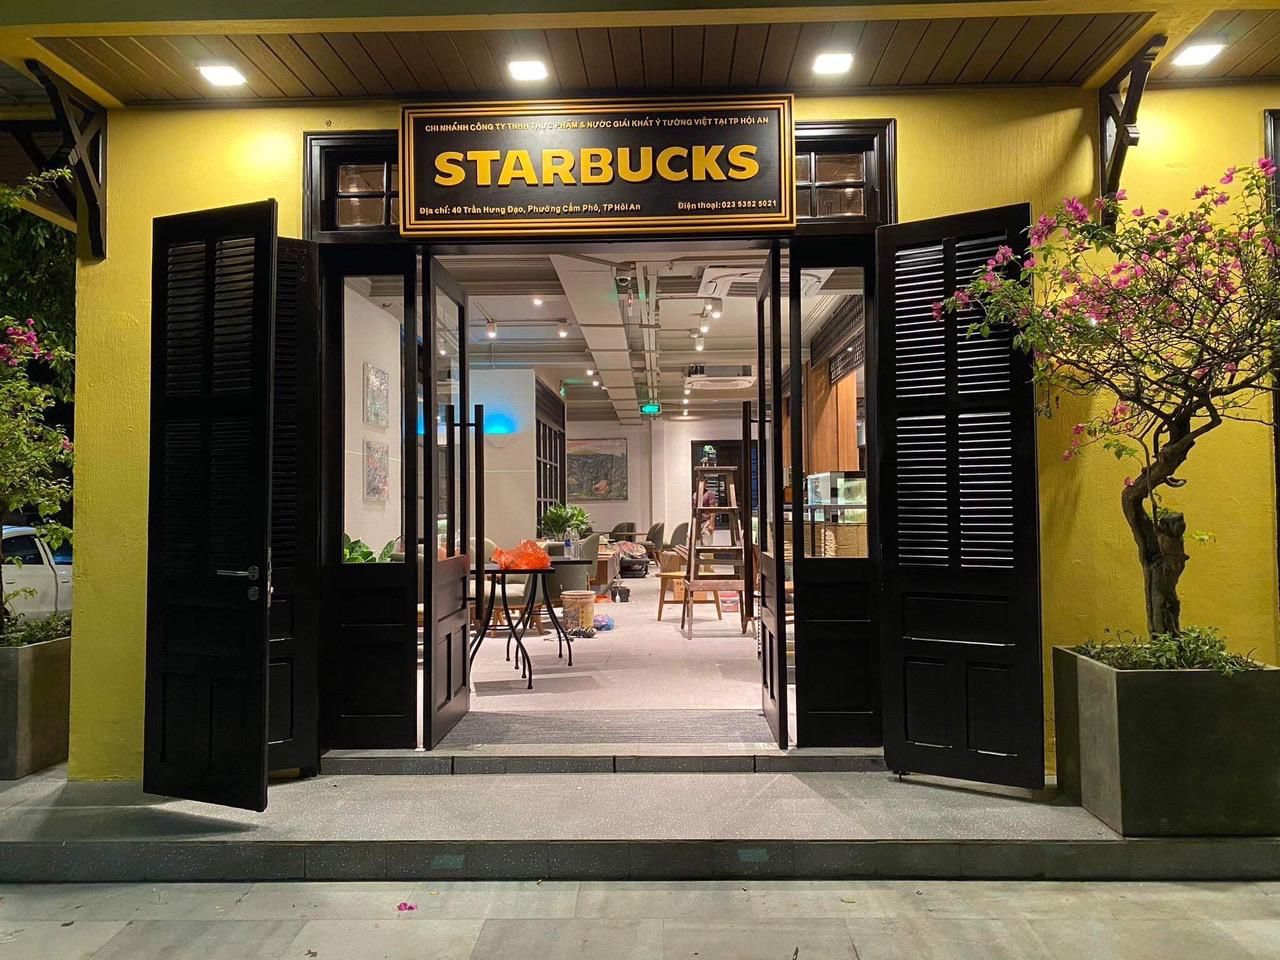 Chuyện Starbucks chuyển đổi Kỳ 2 Khi công ty công nghệ đi bán cà phê   Doanh nghiệp